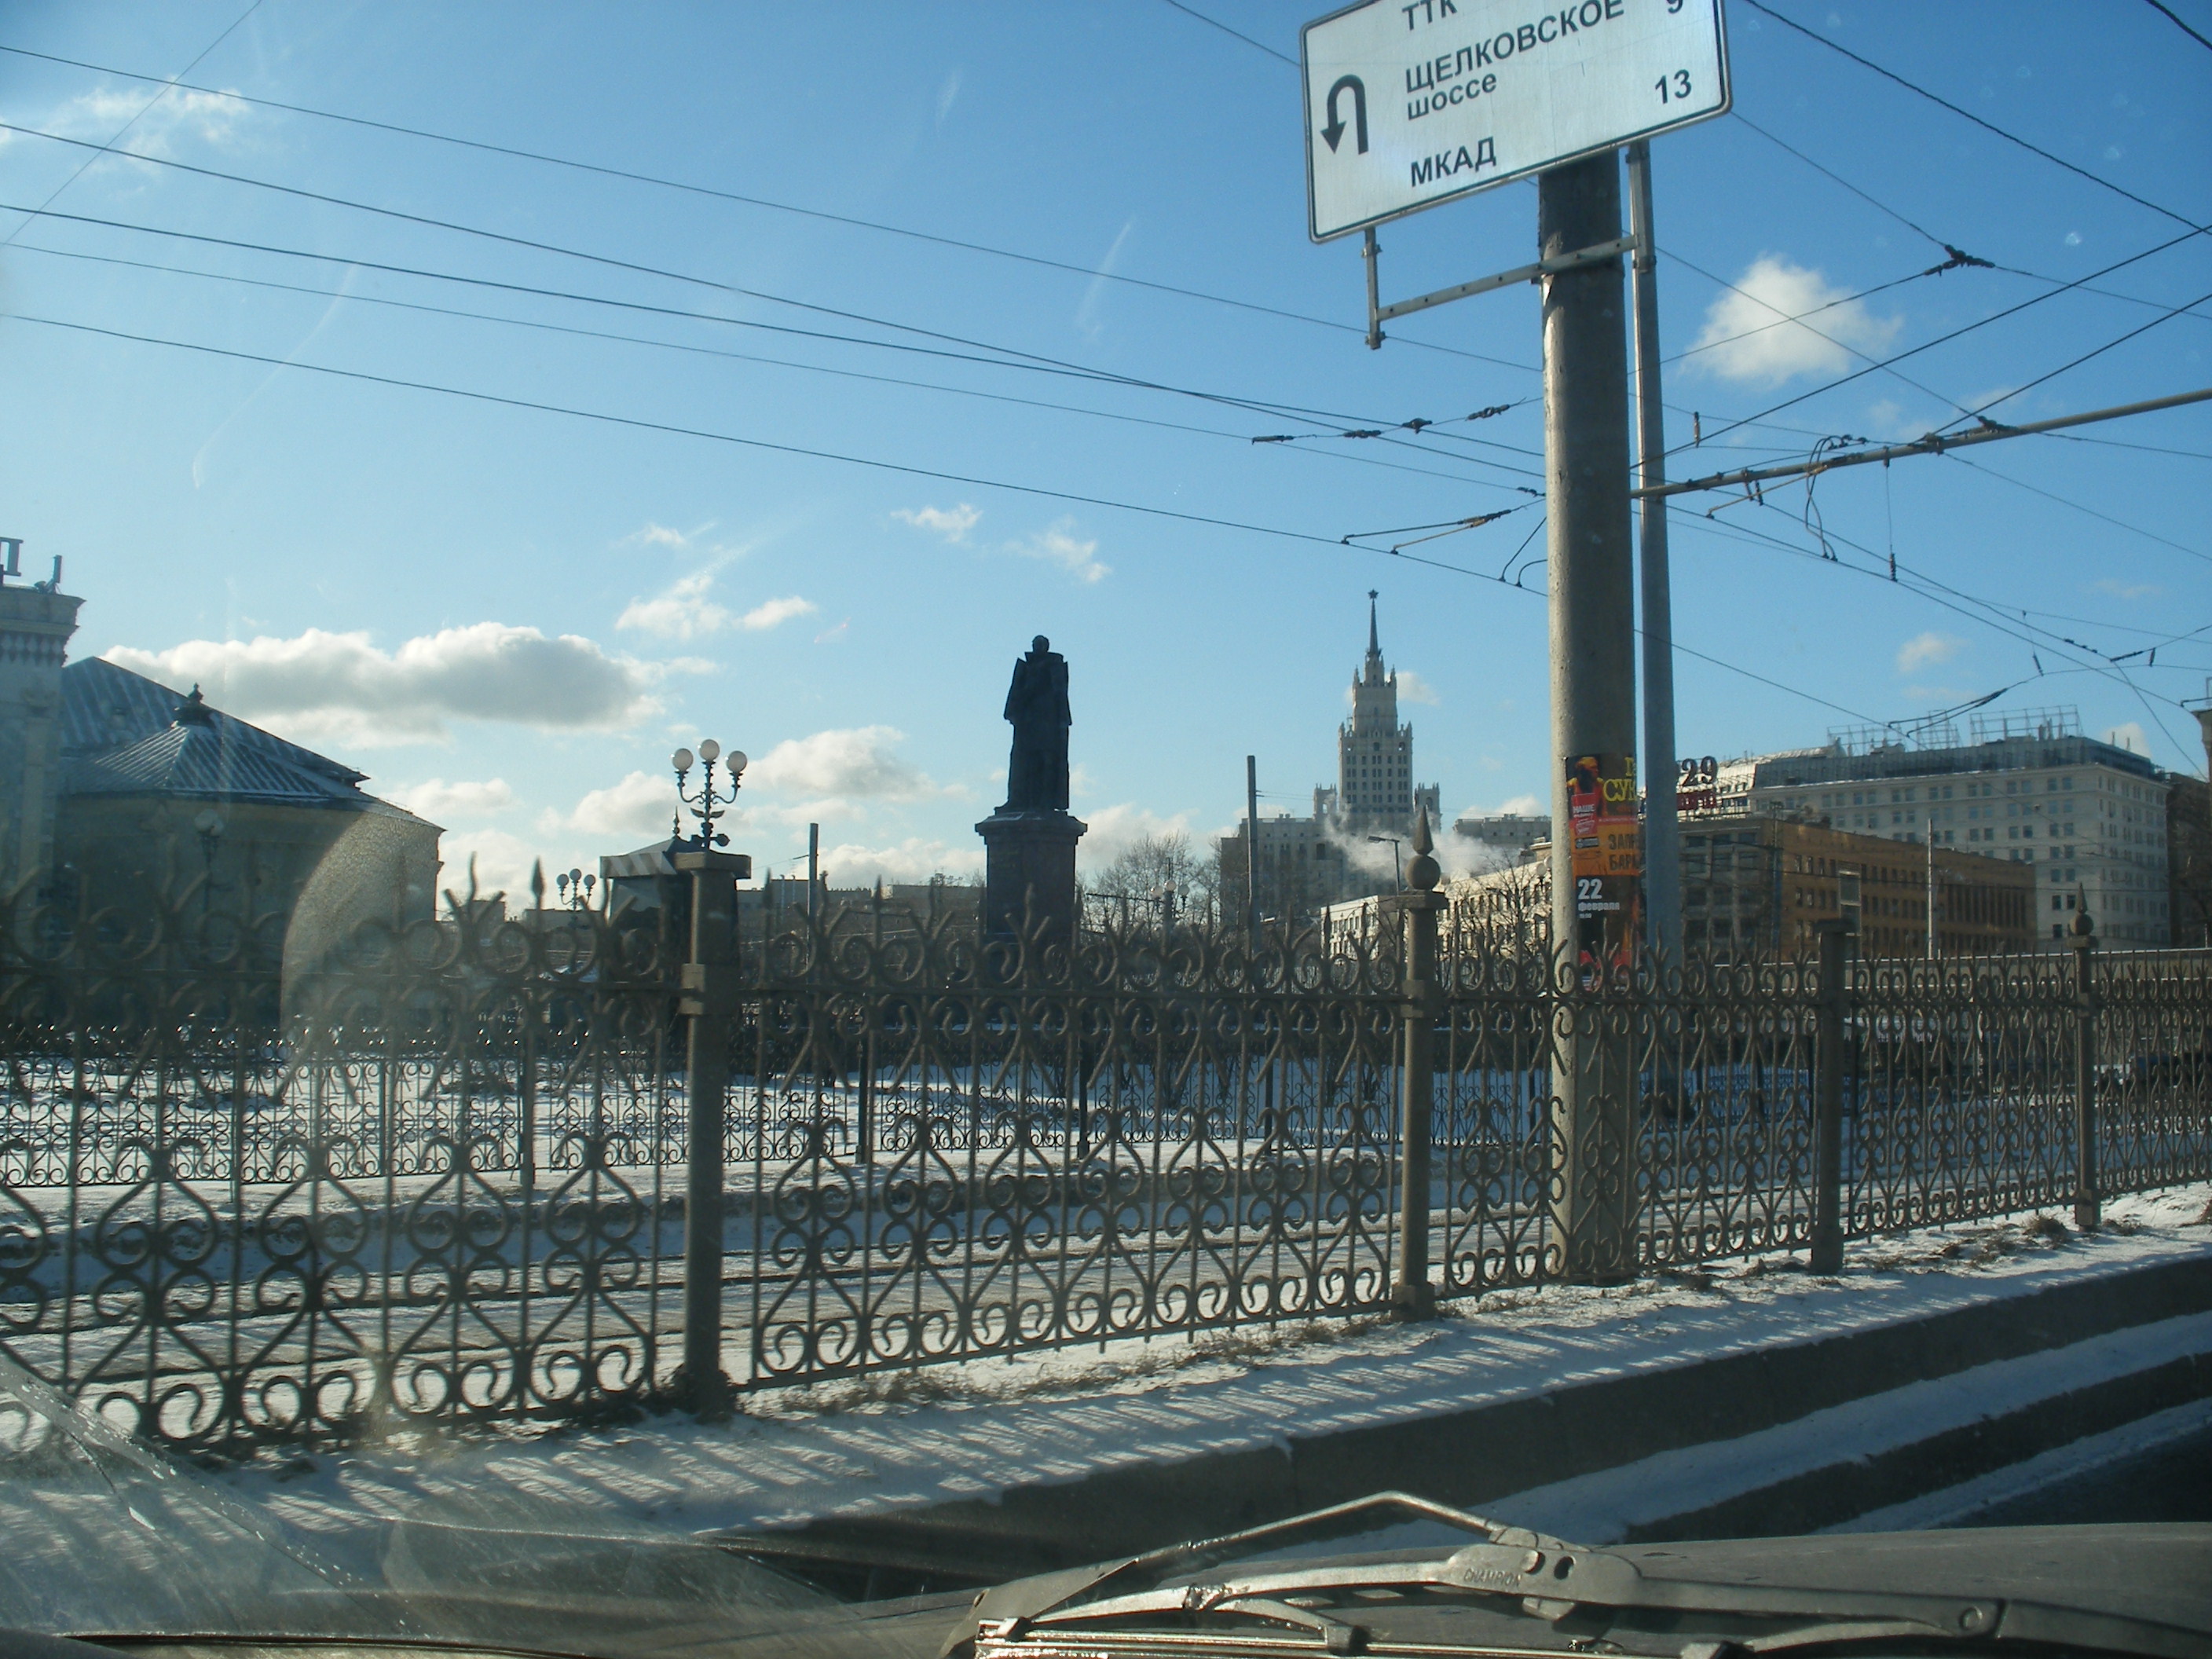 Ride through Moscow!